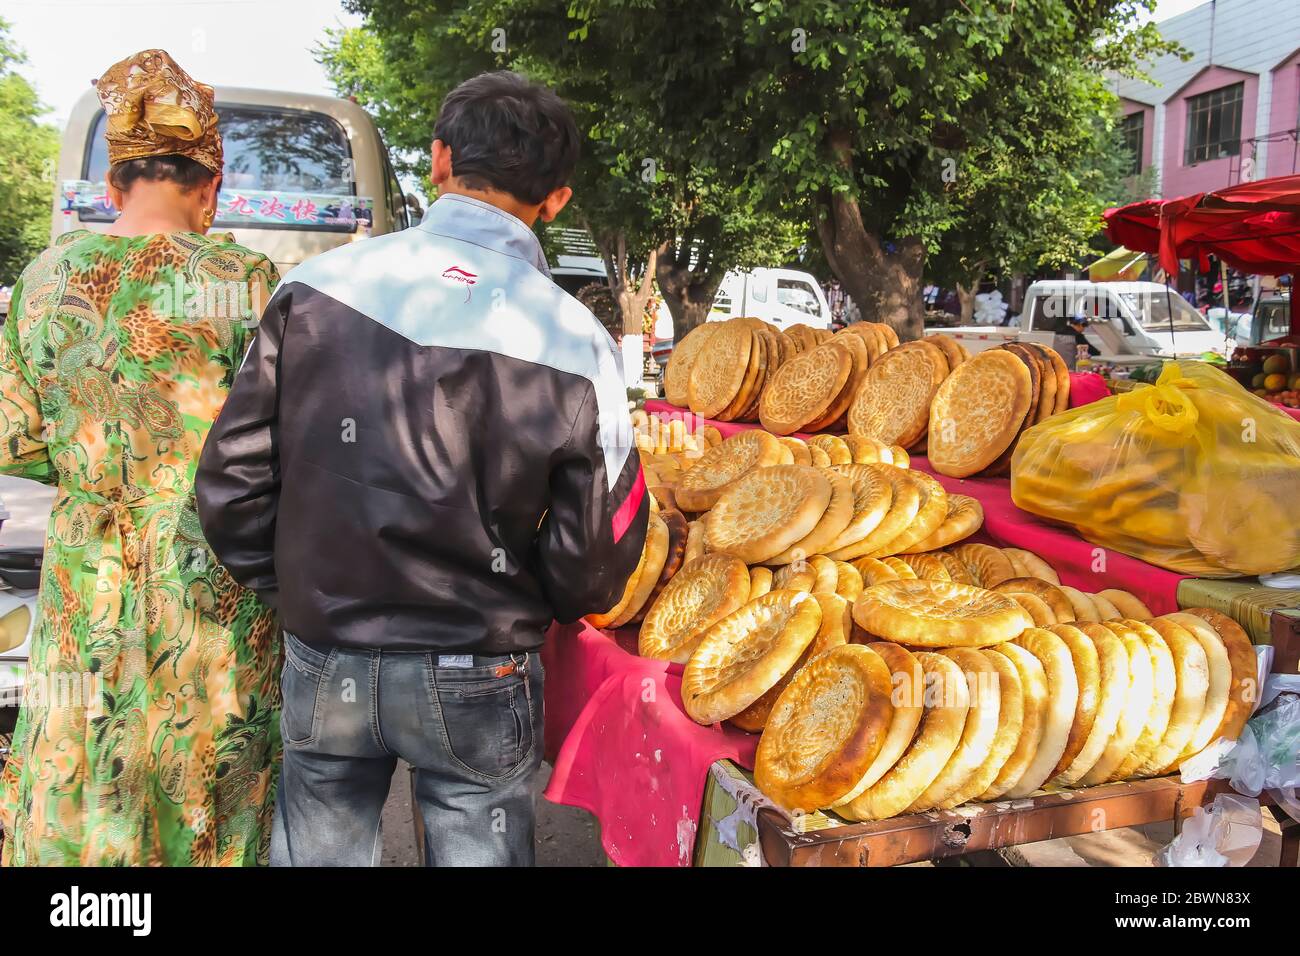 Yining, Xinjiang, China - 13. Juli 2014: Uigurisches Fladenbrot wird an einem Marktstand unter freiem Himmel verkauft Stockfoto